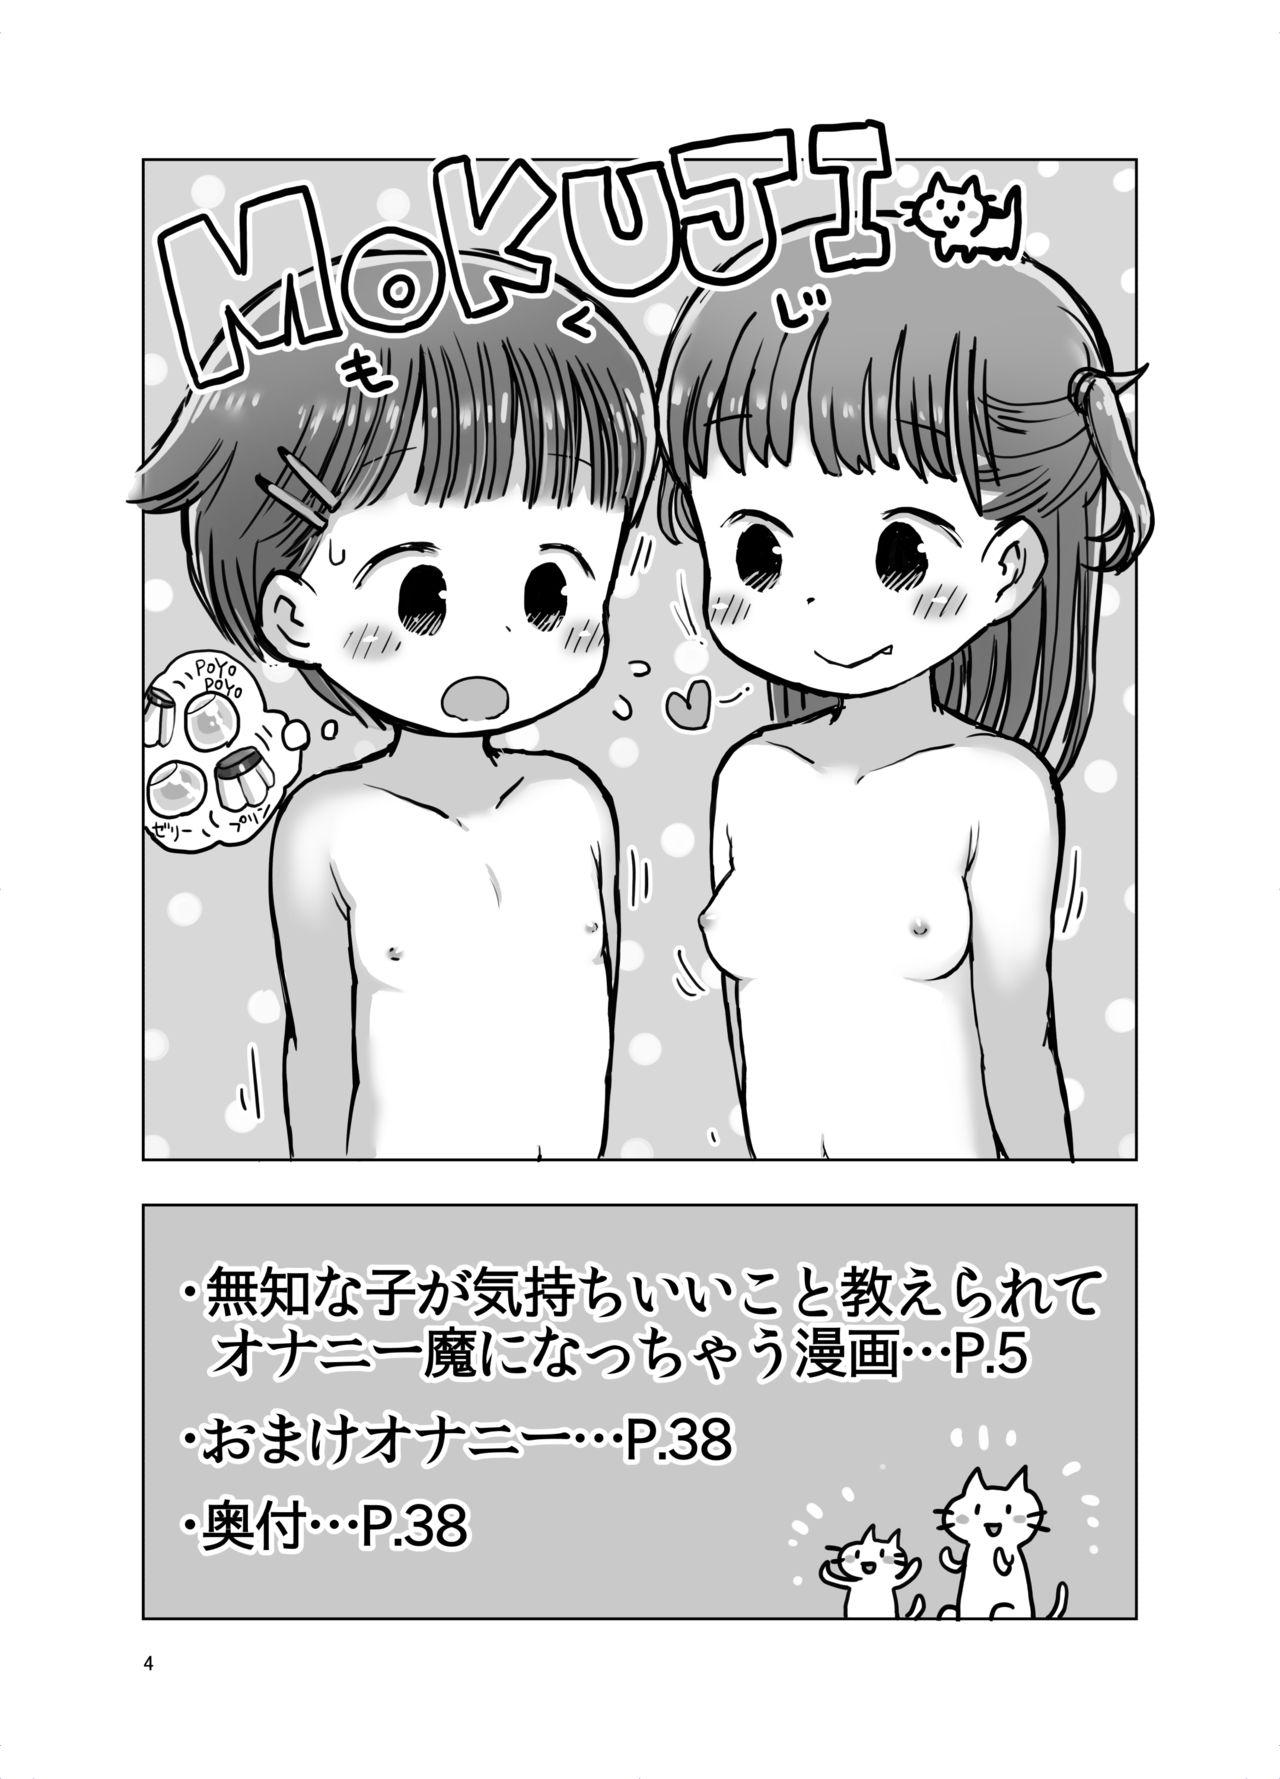 Bunduda Muchi na Ko ga Kimochi Ii Koto Oshierarete Onanie-ma ni Nacchau Manga - Original Ex Girlfriends - Page 3